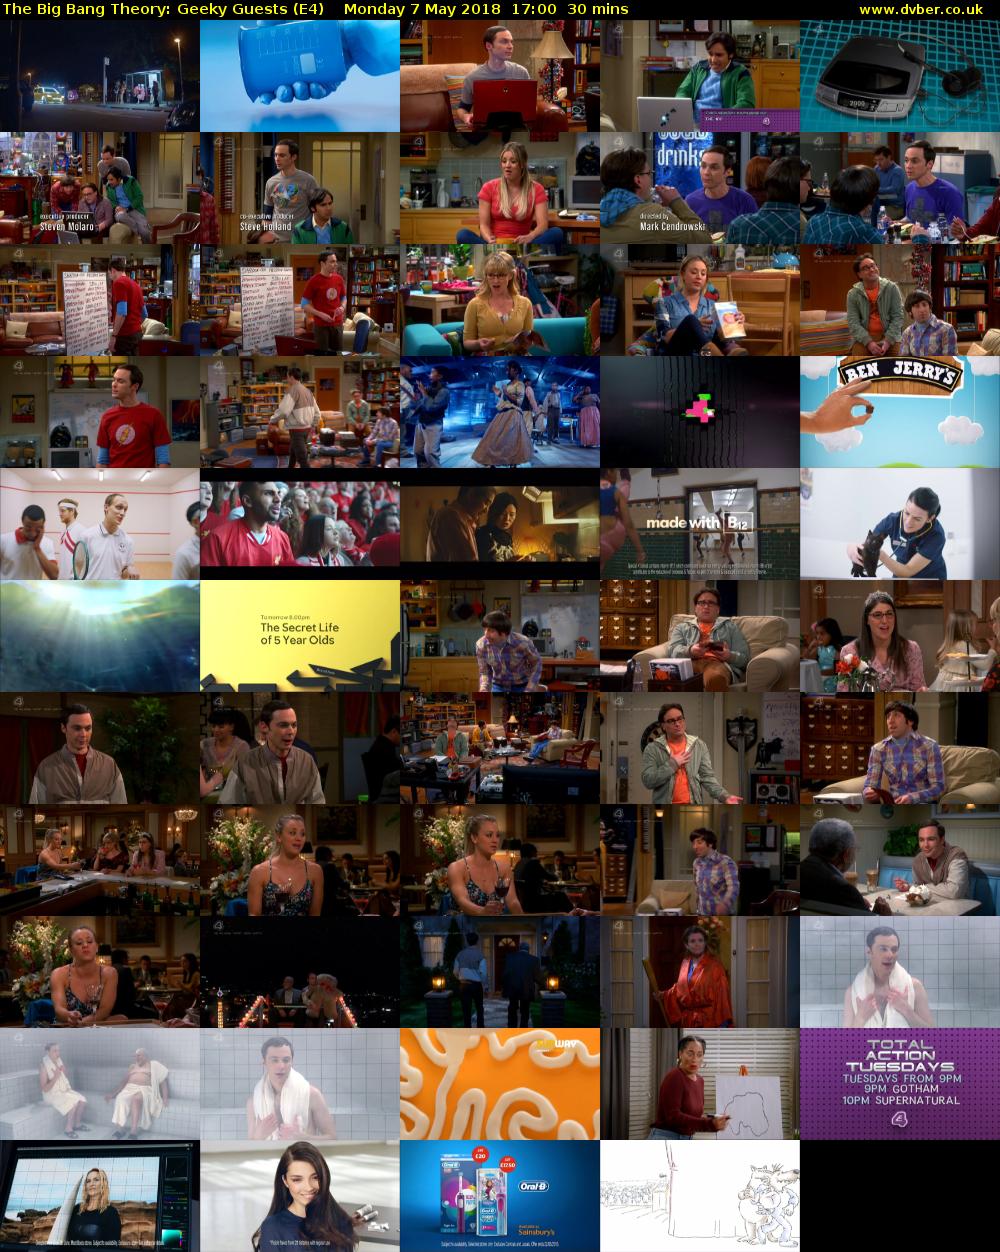 The Big Bang Theory: Geeky Guests (E4) Monday 7 May 2018 17:00 - 17:30